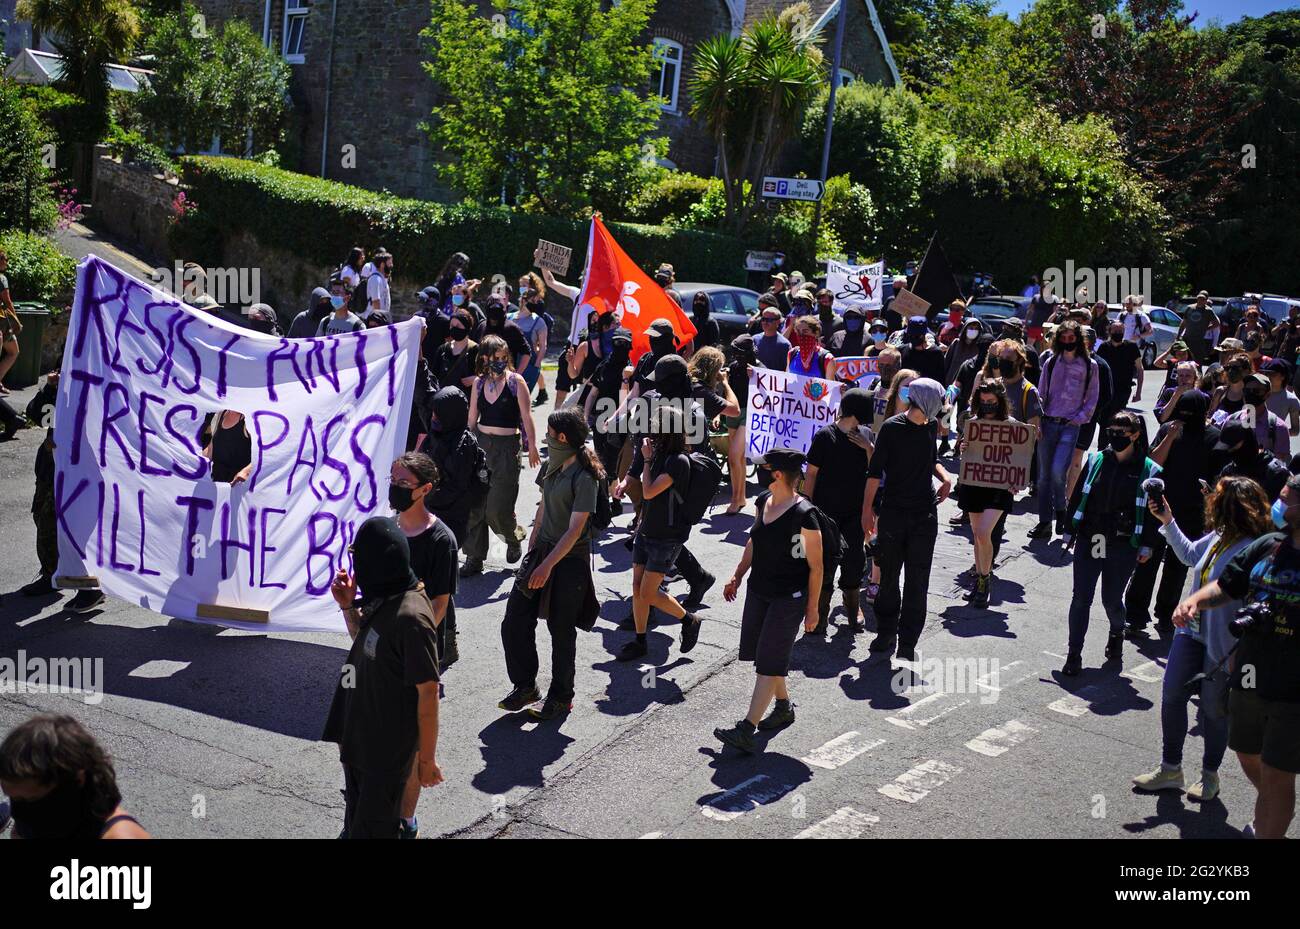 Demonstranten während eines Protestes in Falmouth, während des G7-Gipfels in Cornwall. Bilddatum: Sonntag, 13. Juni 2021. Stockfoto